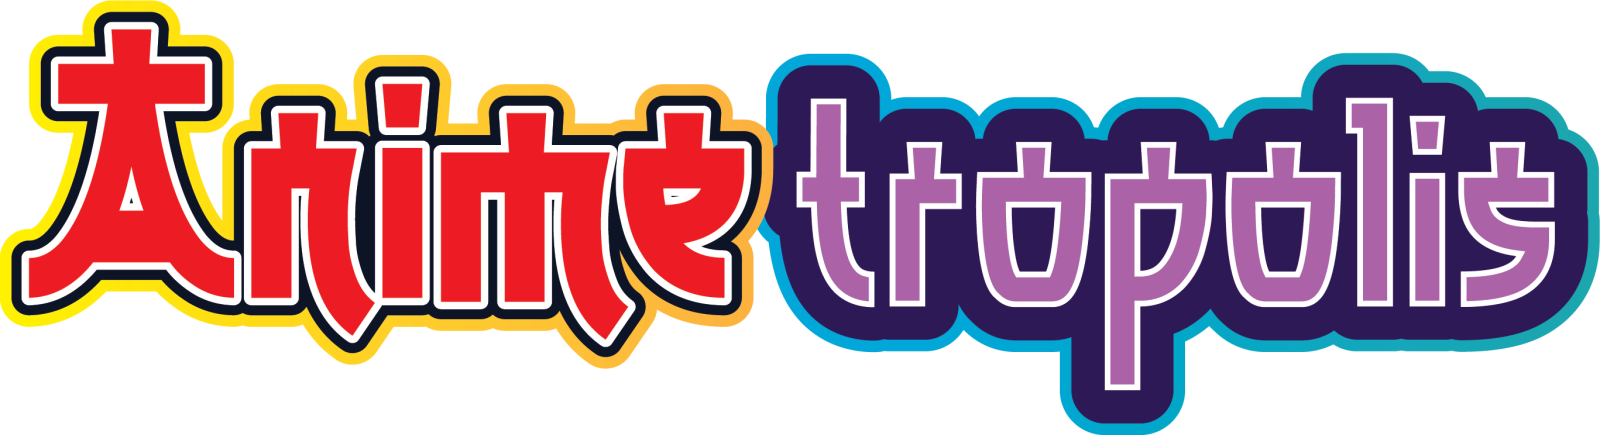 AnimeTropolis logo